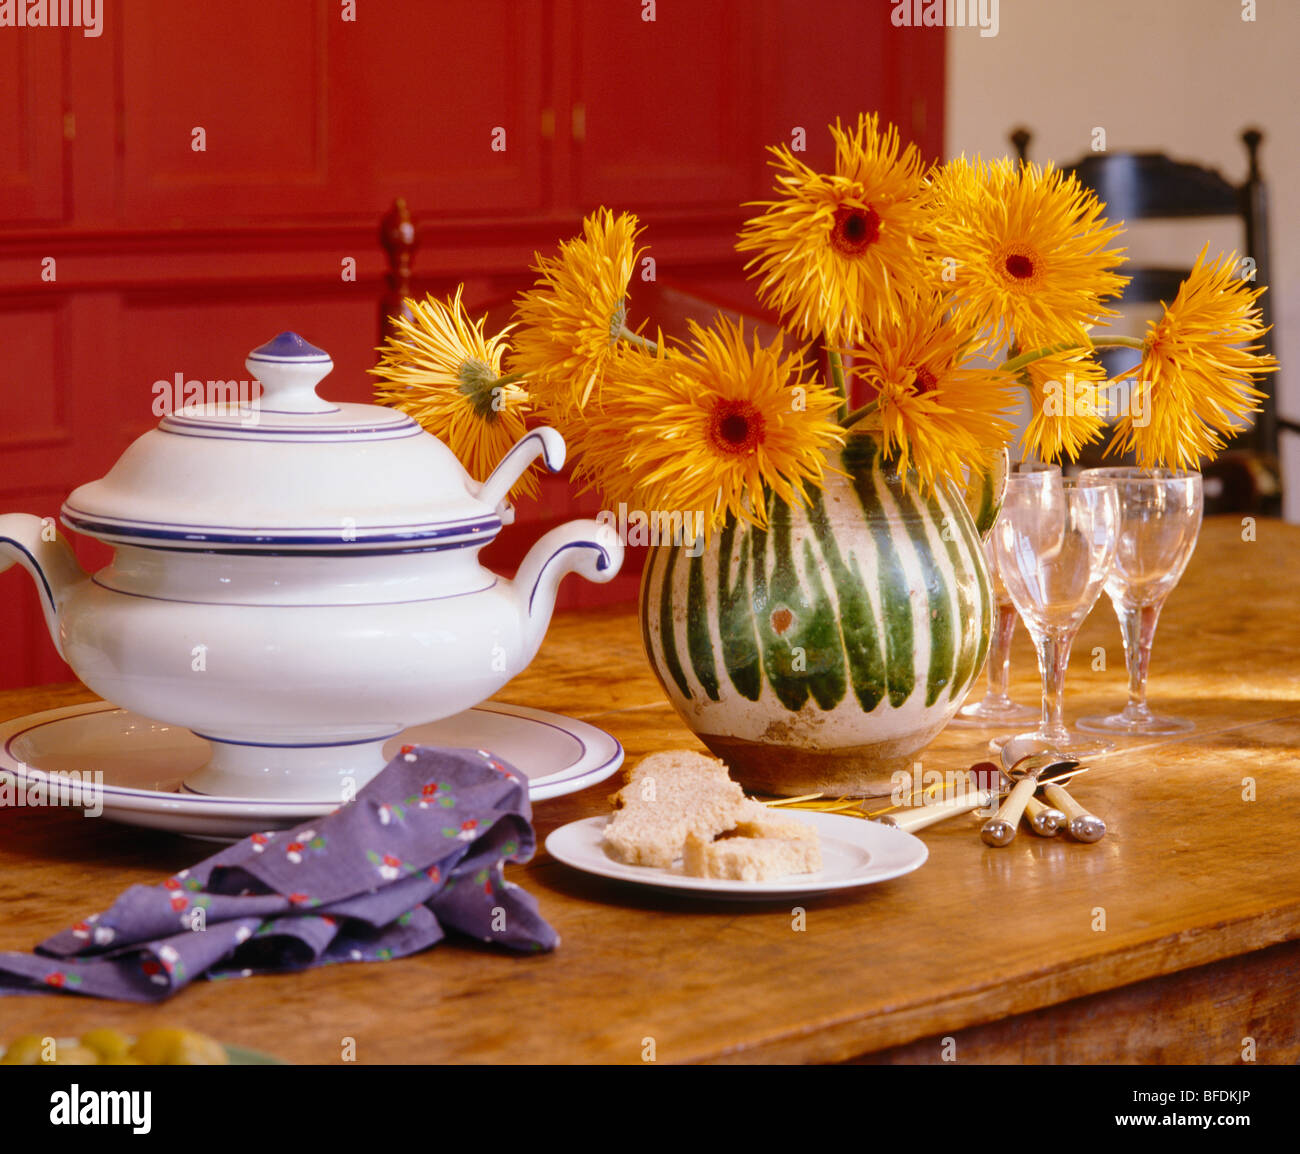 Close-up de vase de chrysanthèmes orange à côté de soupière blanche sur table à manger en bois Banque D'Images